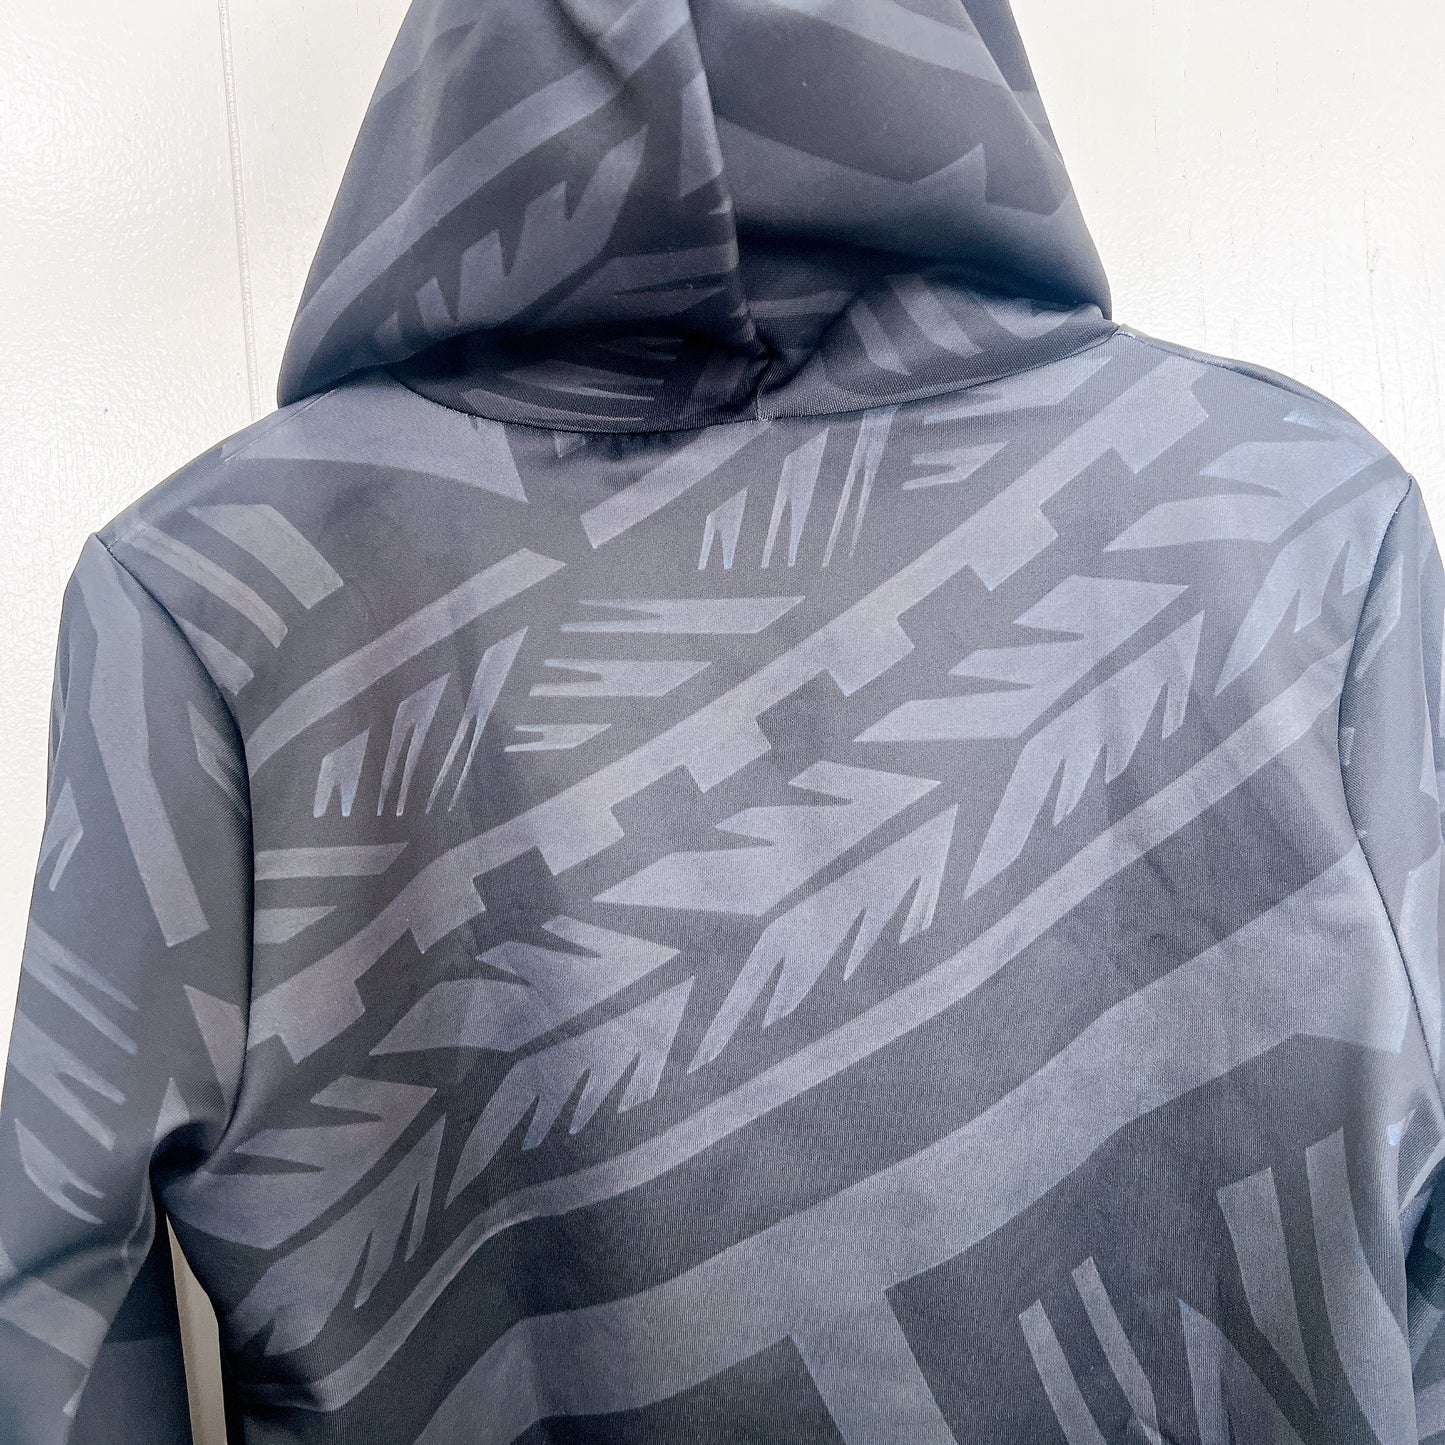 Manahau original zip hoodie